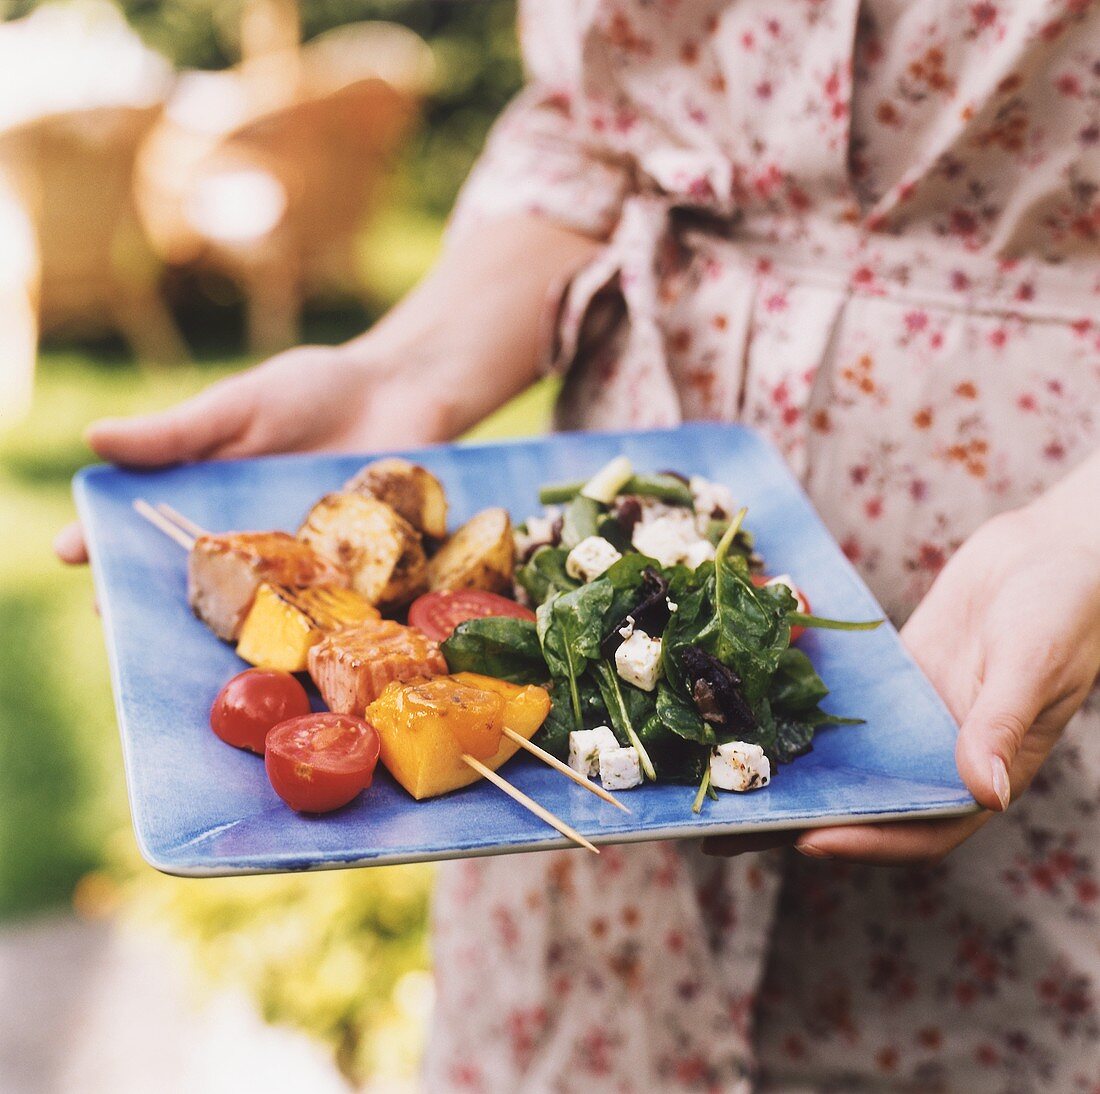 Frau hält einen Teller mit Gegrilltem und Salat